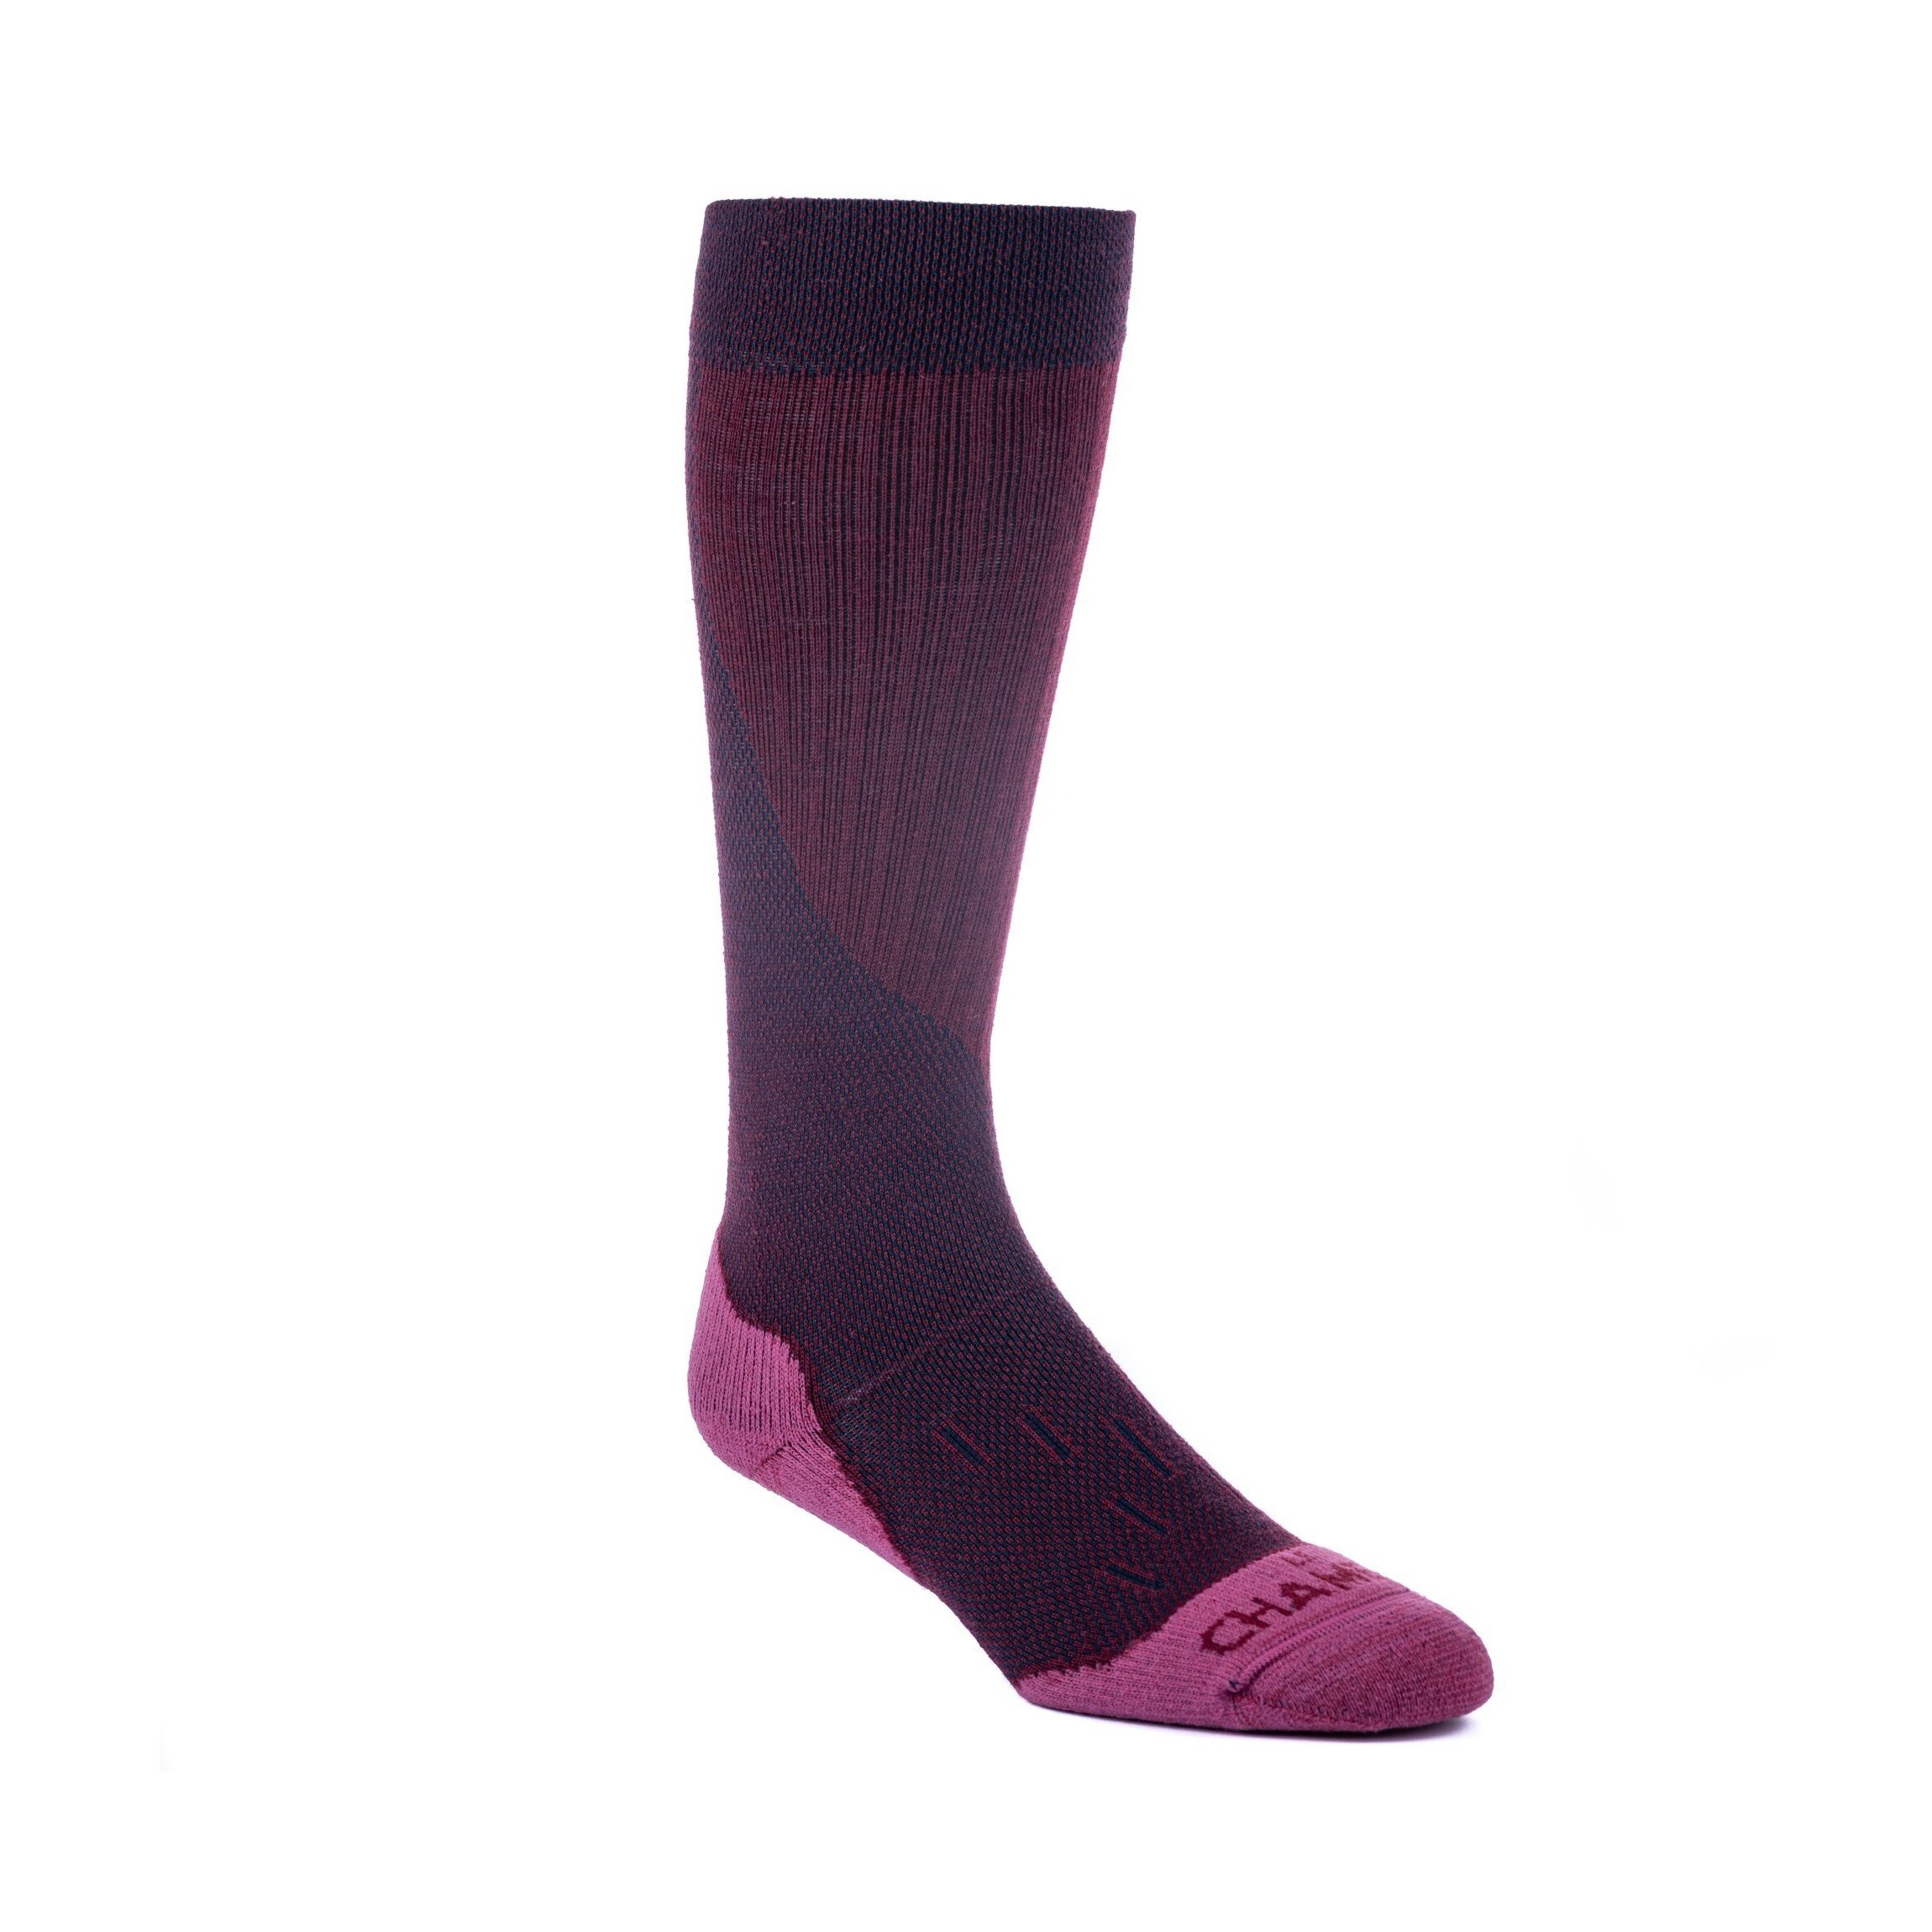 Iris Socks Accessories